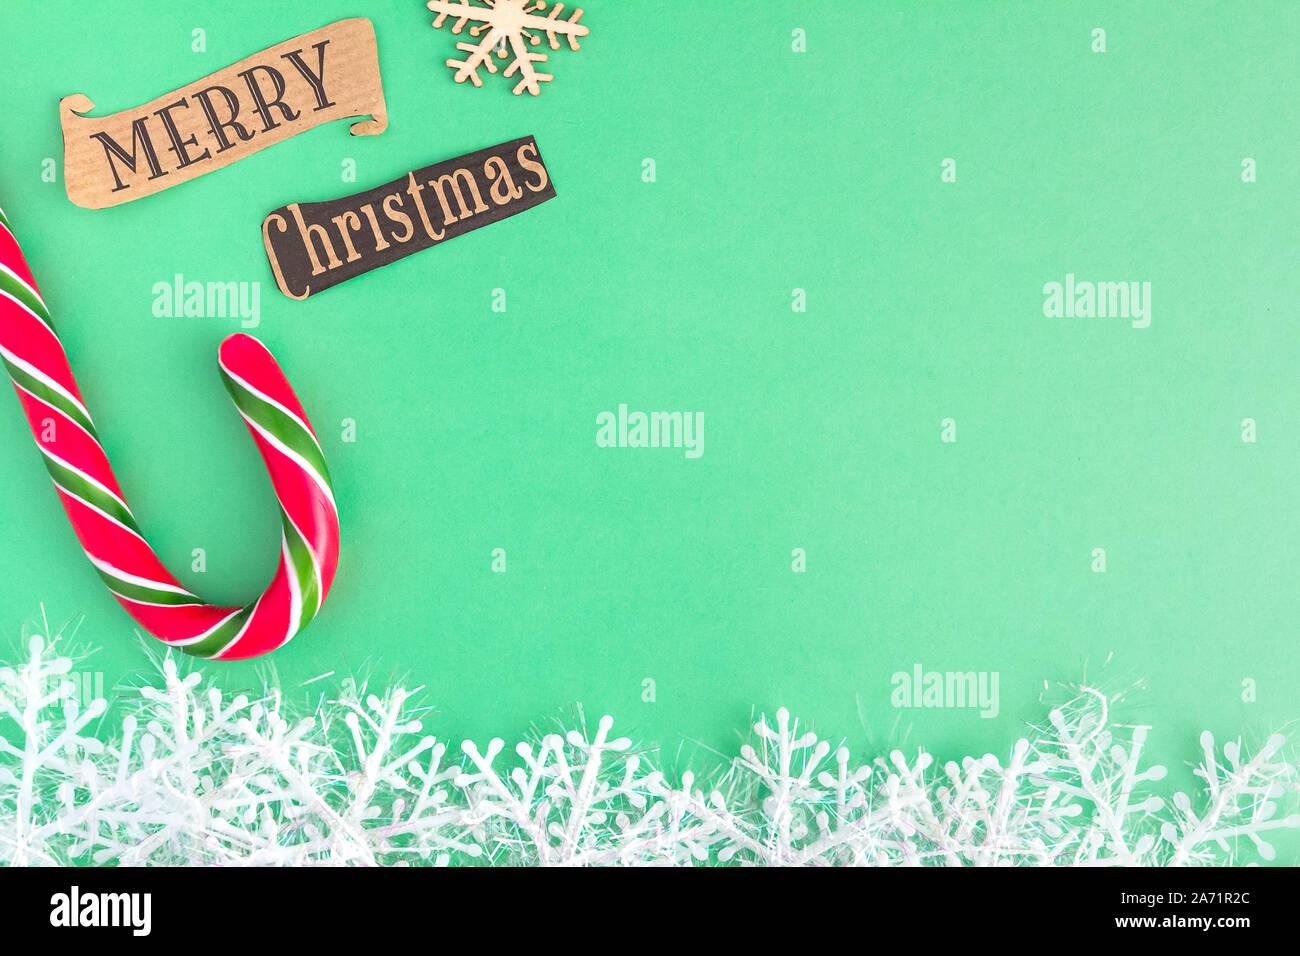 Traditionelle Weihnachten caramel Candy Cane und Schneeflocken auf einem Mint Grüner Hintergrund mit Frohe Weihnachten Schriftzug. Winterurlaub festliche Begrüßung Stockfoto